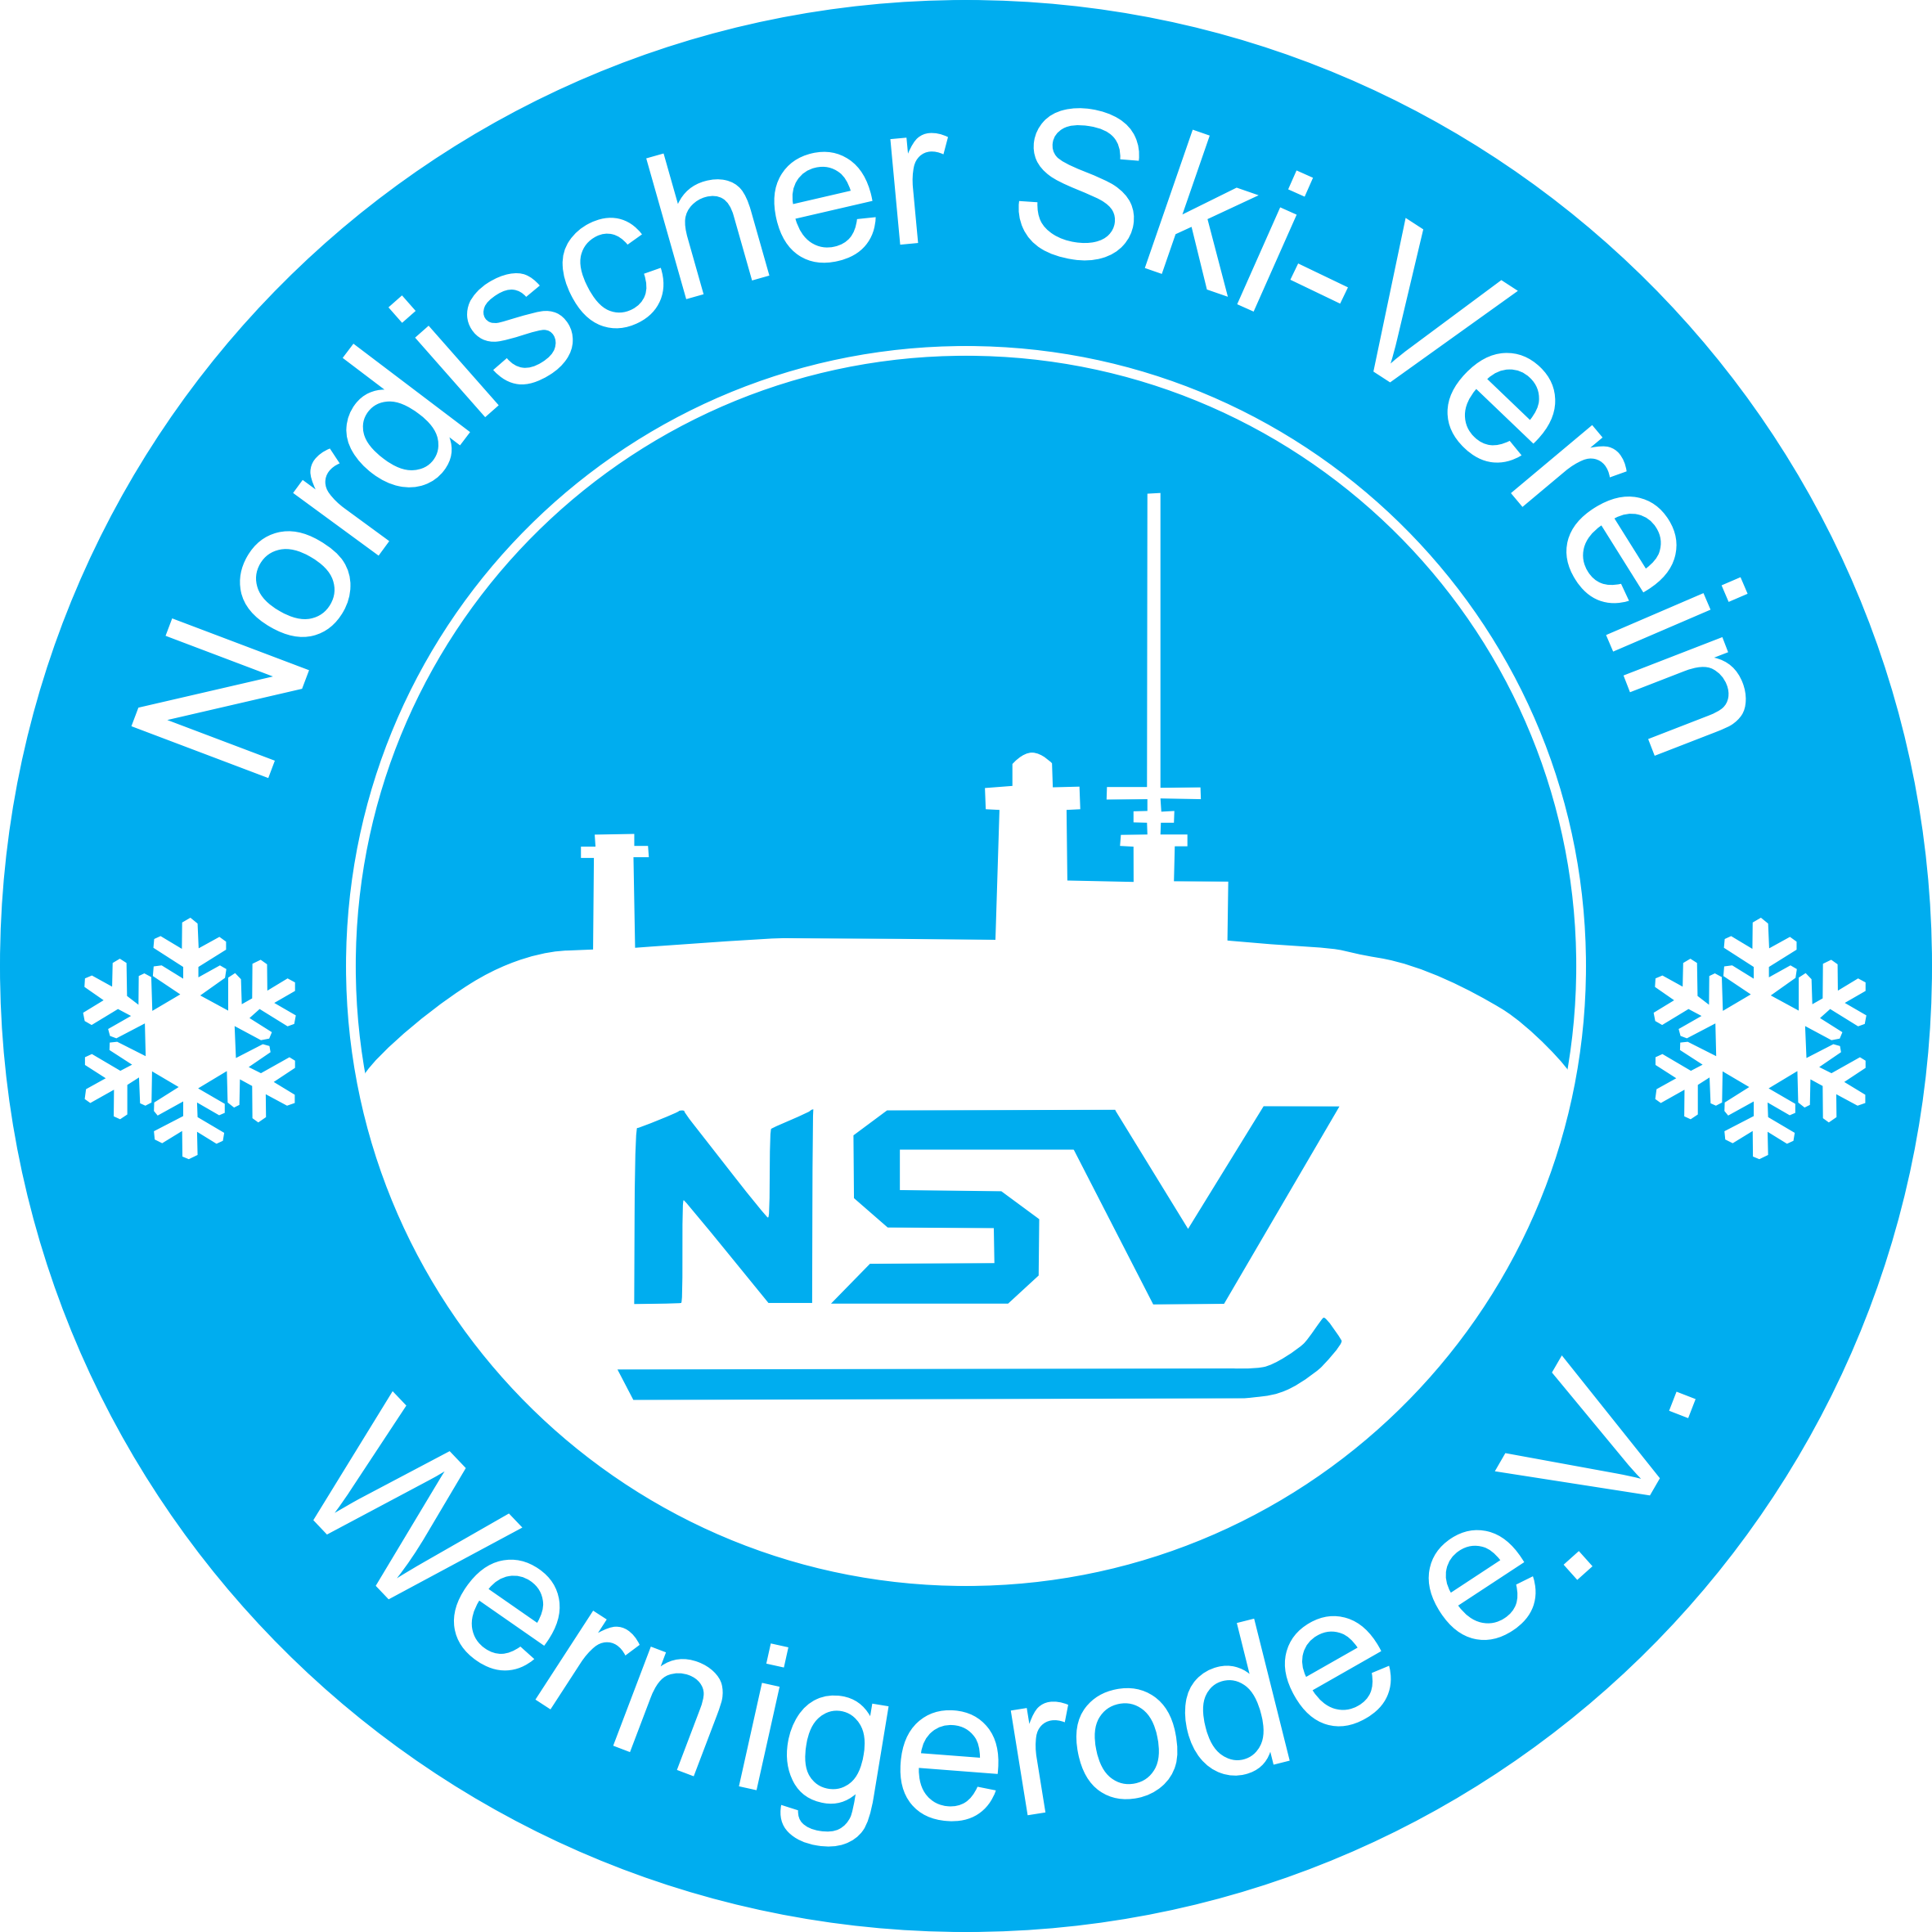 Hinter dem Lauf steht der Nordische Ski-Verein Wernigerode e. V., der diesen Lauf in ehrenamtlicher Arbeit organisiert und ausrichtet. Die Einnahmen der Veranstaltung kommen in vollem Umfang der eigenen Nachwuchsabteilung zu Gute.